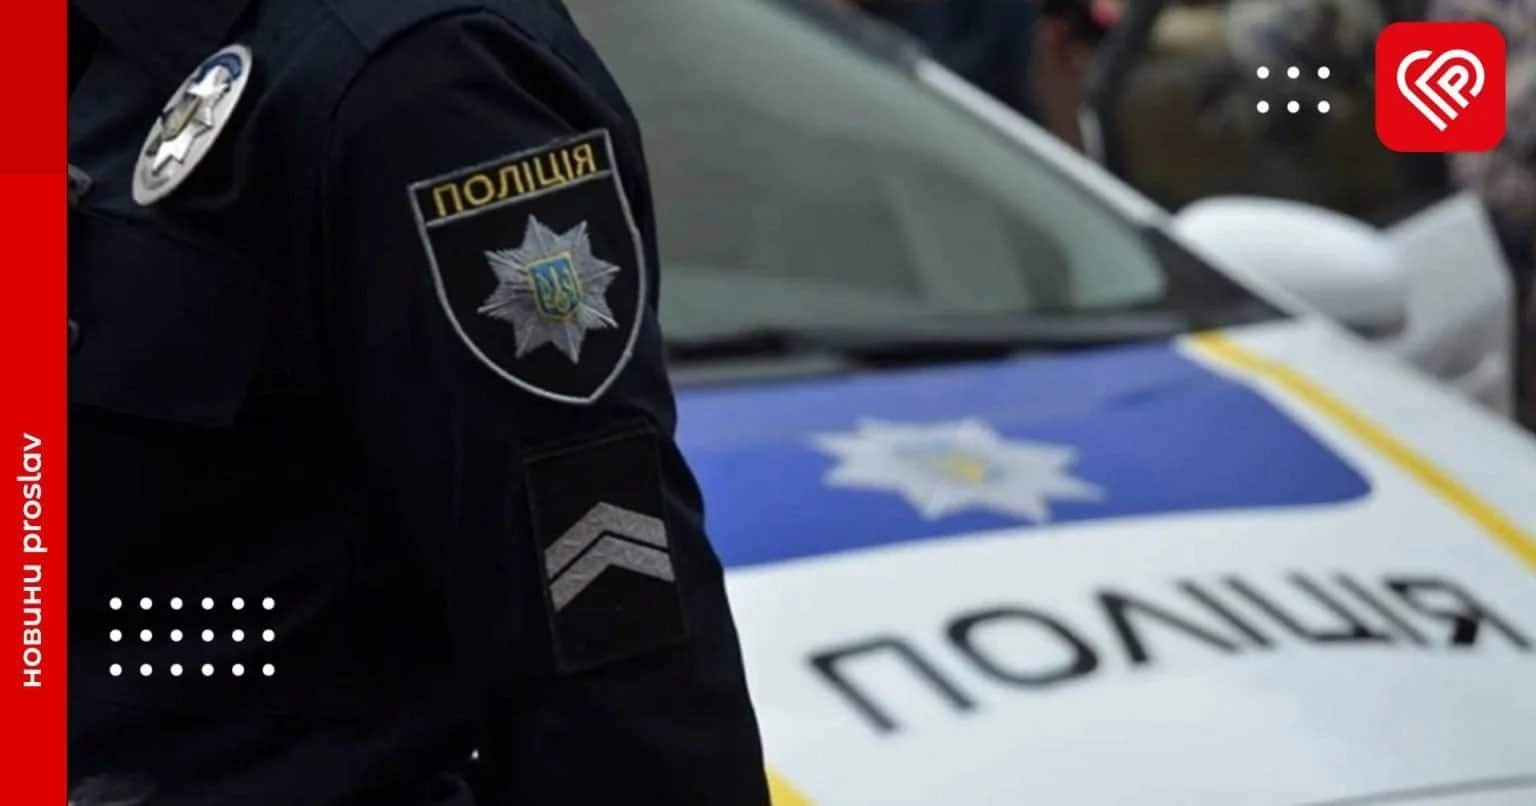 Амфетамін, контрафакт та потенційне вбивство: оперативна інформація від переяславської поліції за минулу добу